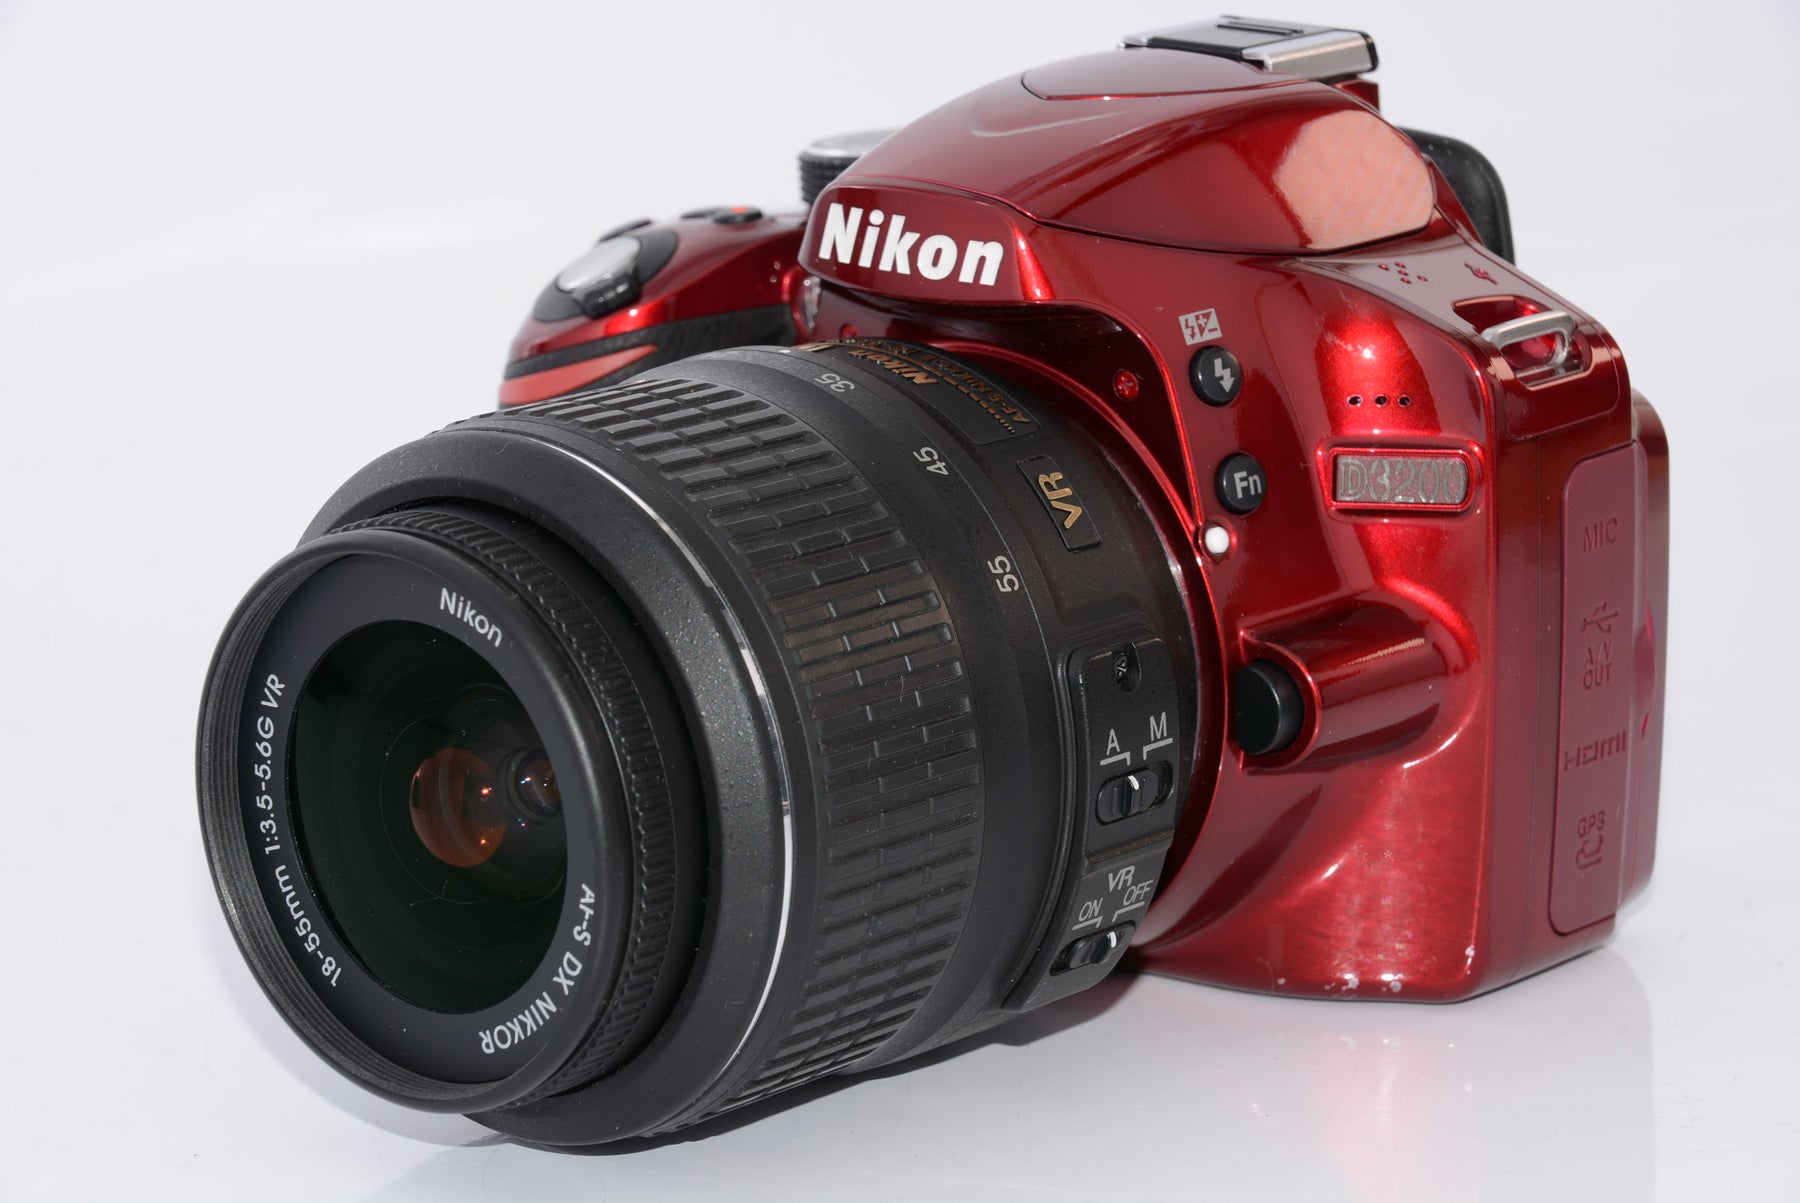 Nikon D3200 一眼レフカメラ - 愛媛県の家具